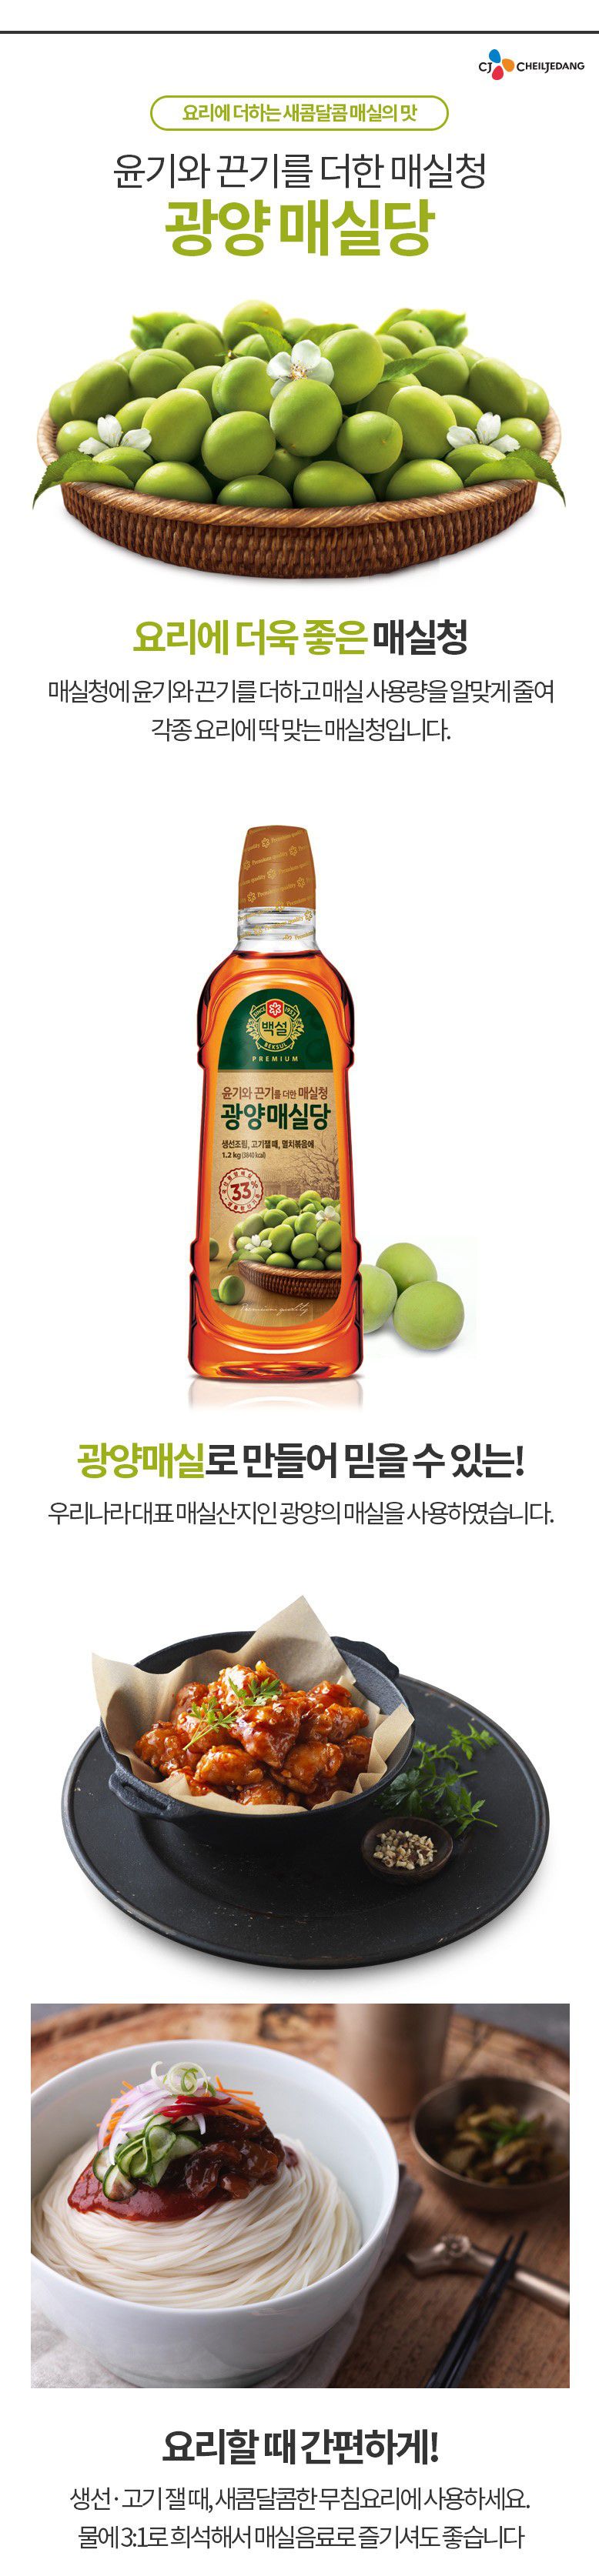 韓國食品-[CJ] 백설 광양매실당 1.2kg